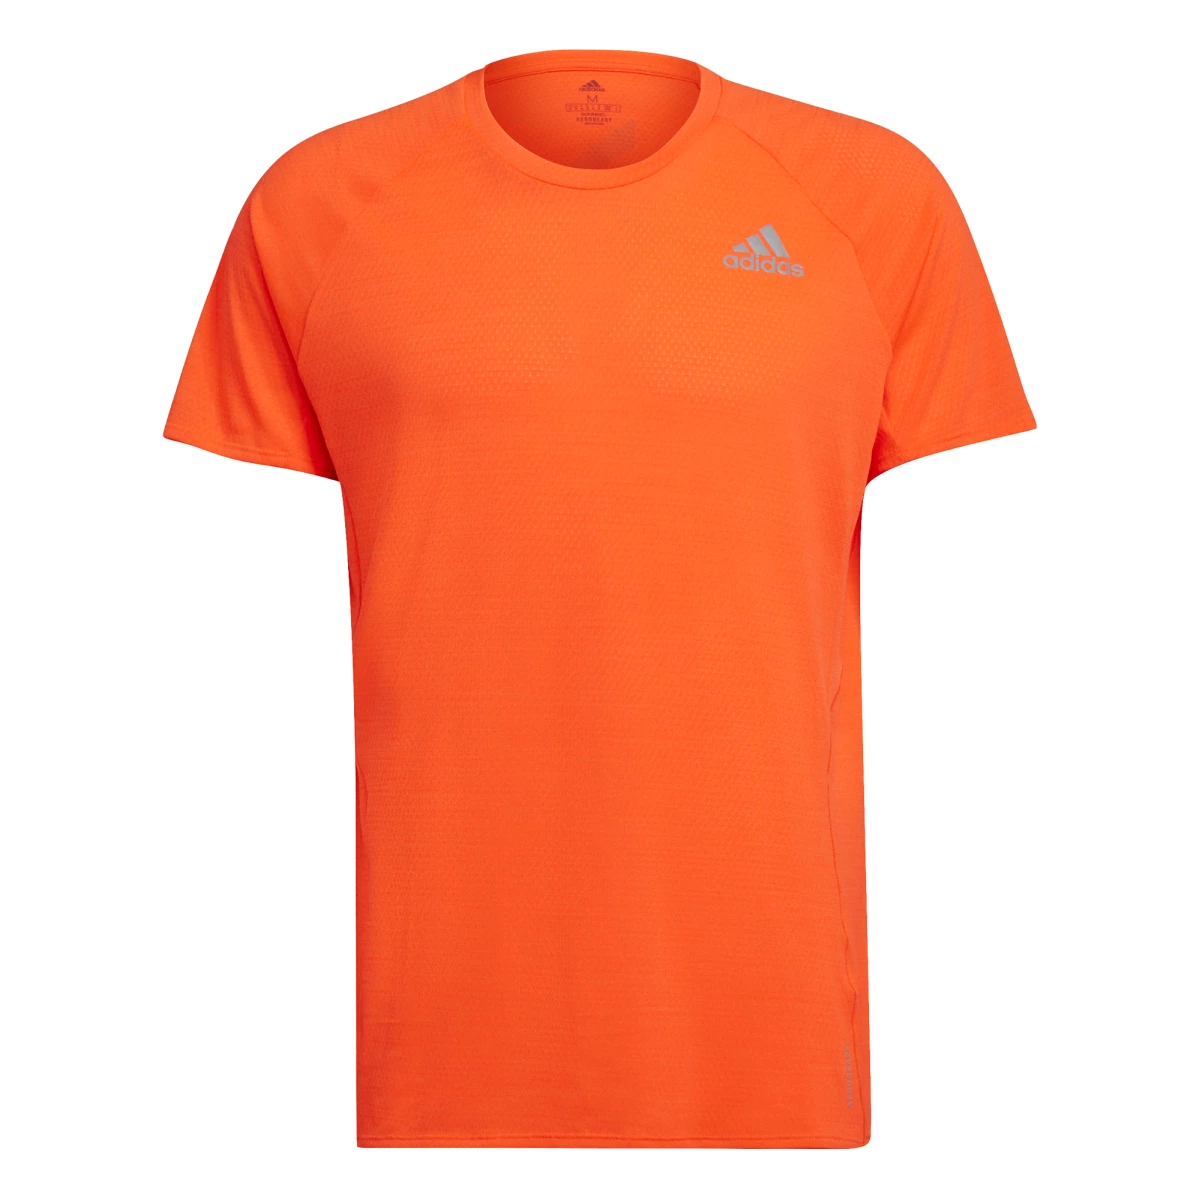 Adidas Runner - Mouwen - Shirts - - Running - Intersport van den Broek / Biggelaar